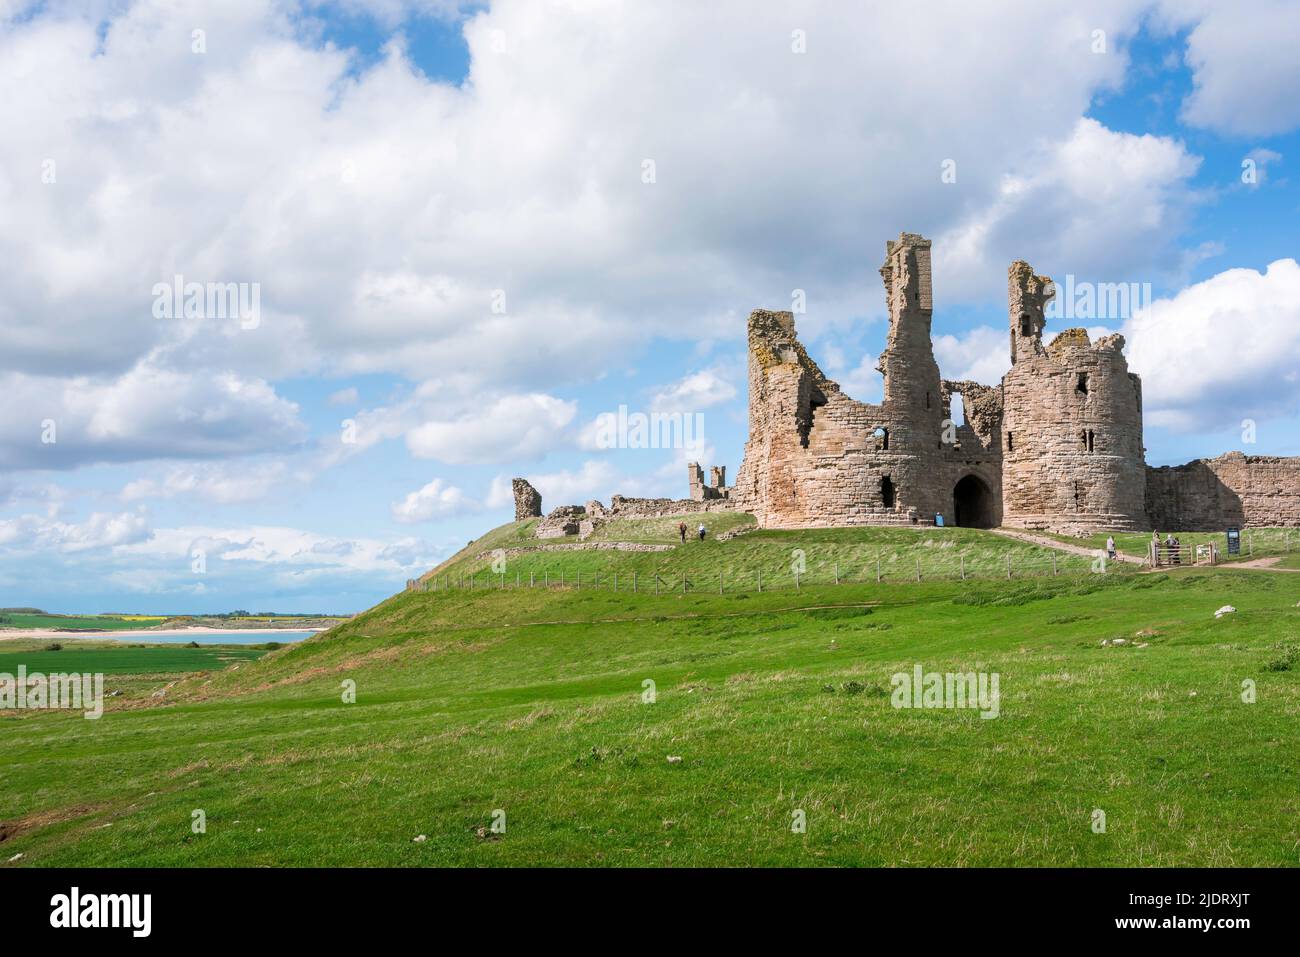 Castello di Dunstanburgh, vista nella tarda primavera del castello di Dunstanburgh del 14th secolo in rovina, situato sulla costa del Northumberland vicino a Embleton Bay, Inghilterra Foto Stock